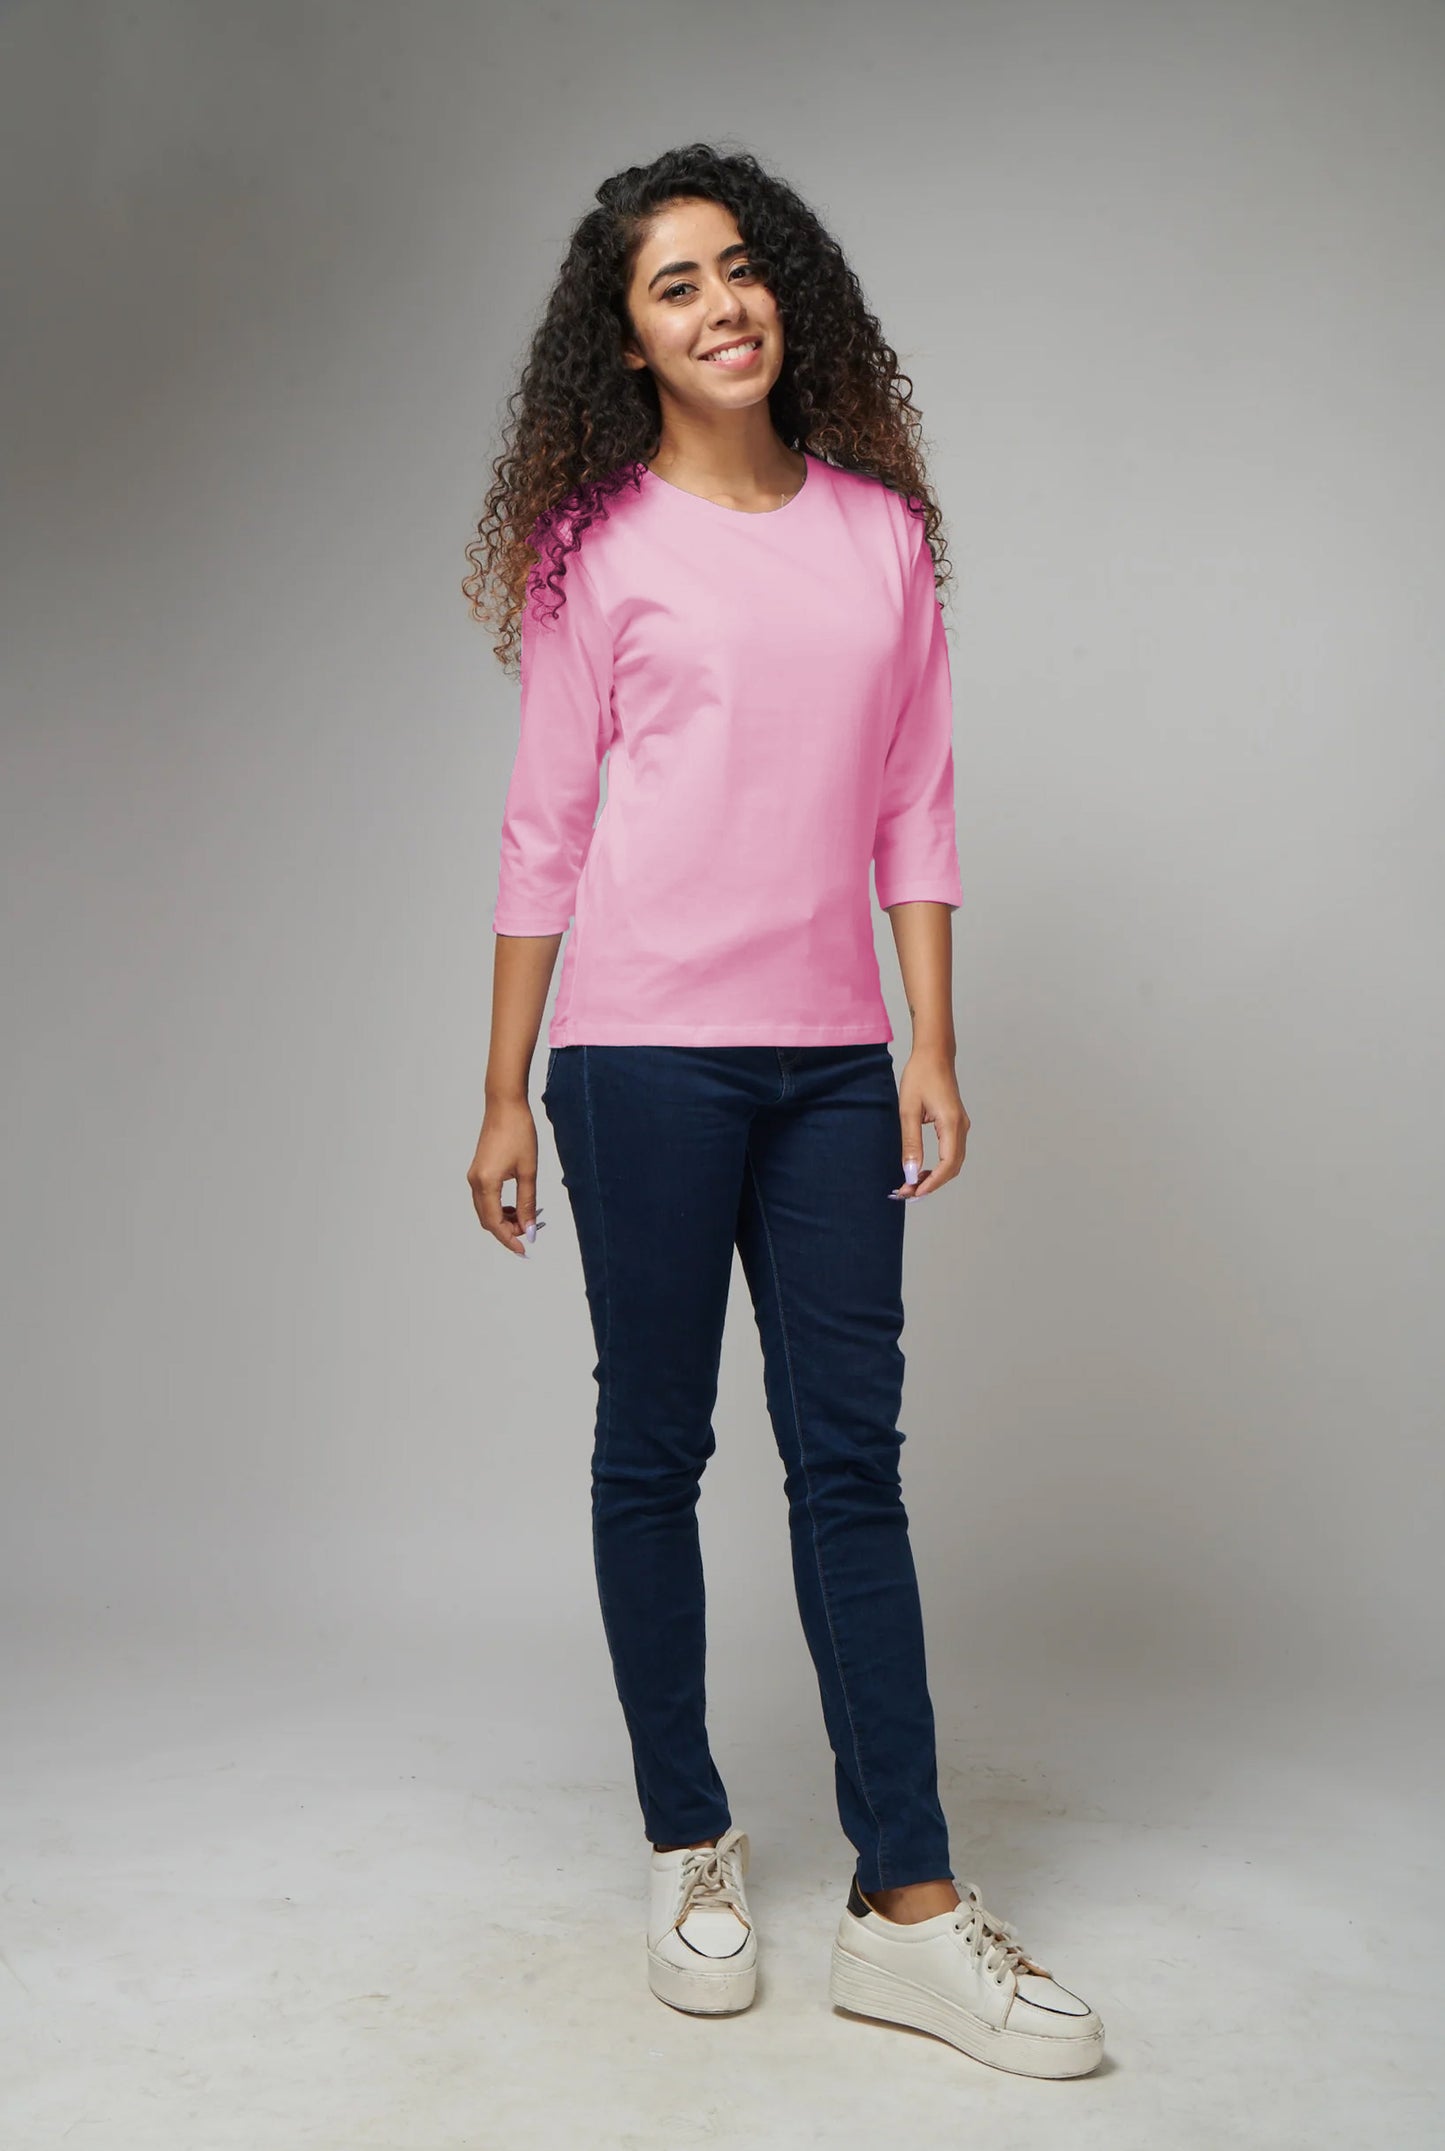 Women's Basic Pink Full Sleeves T-Shirt